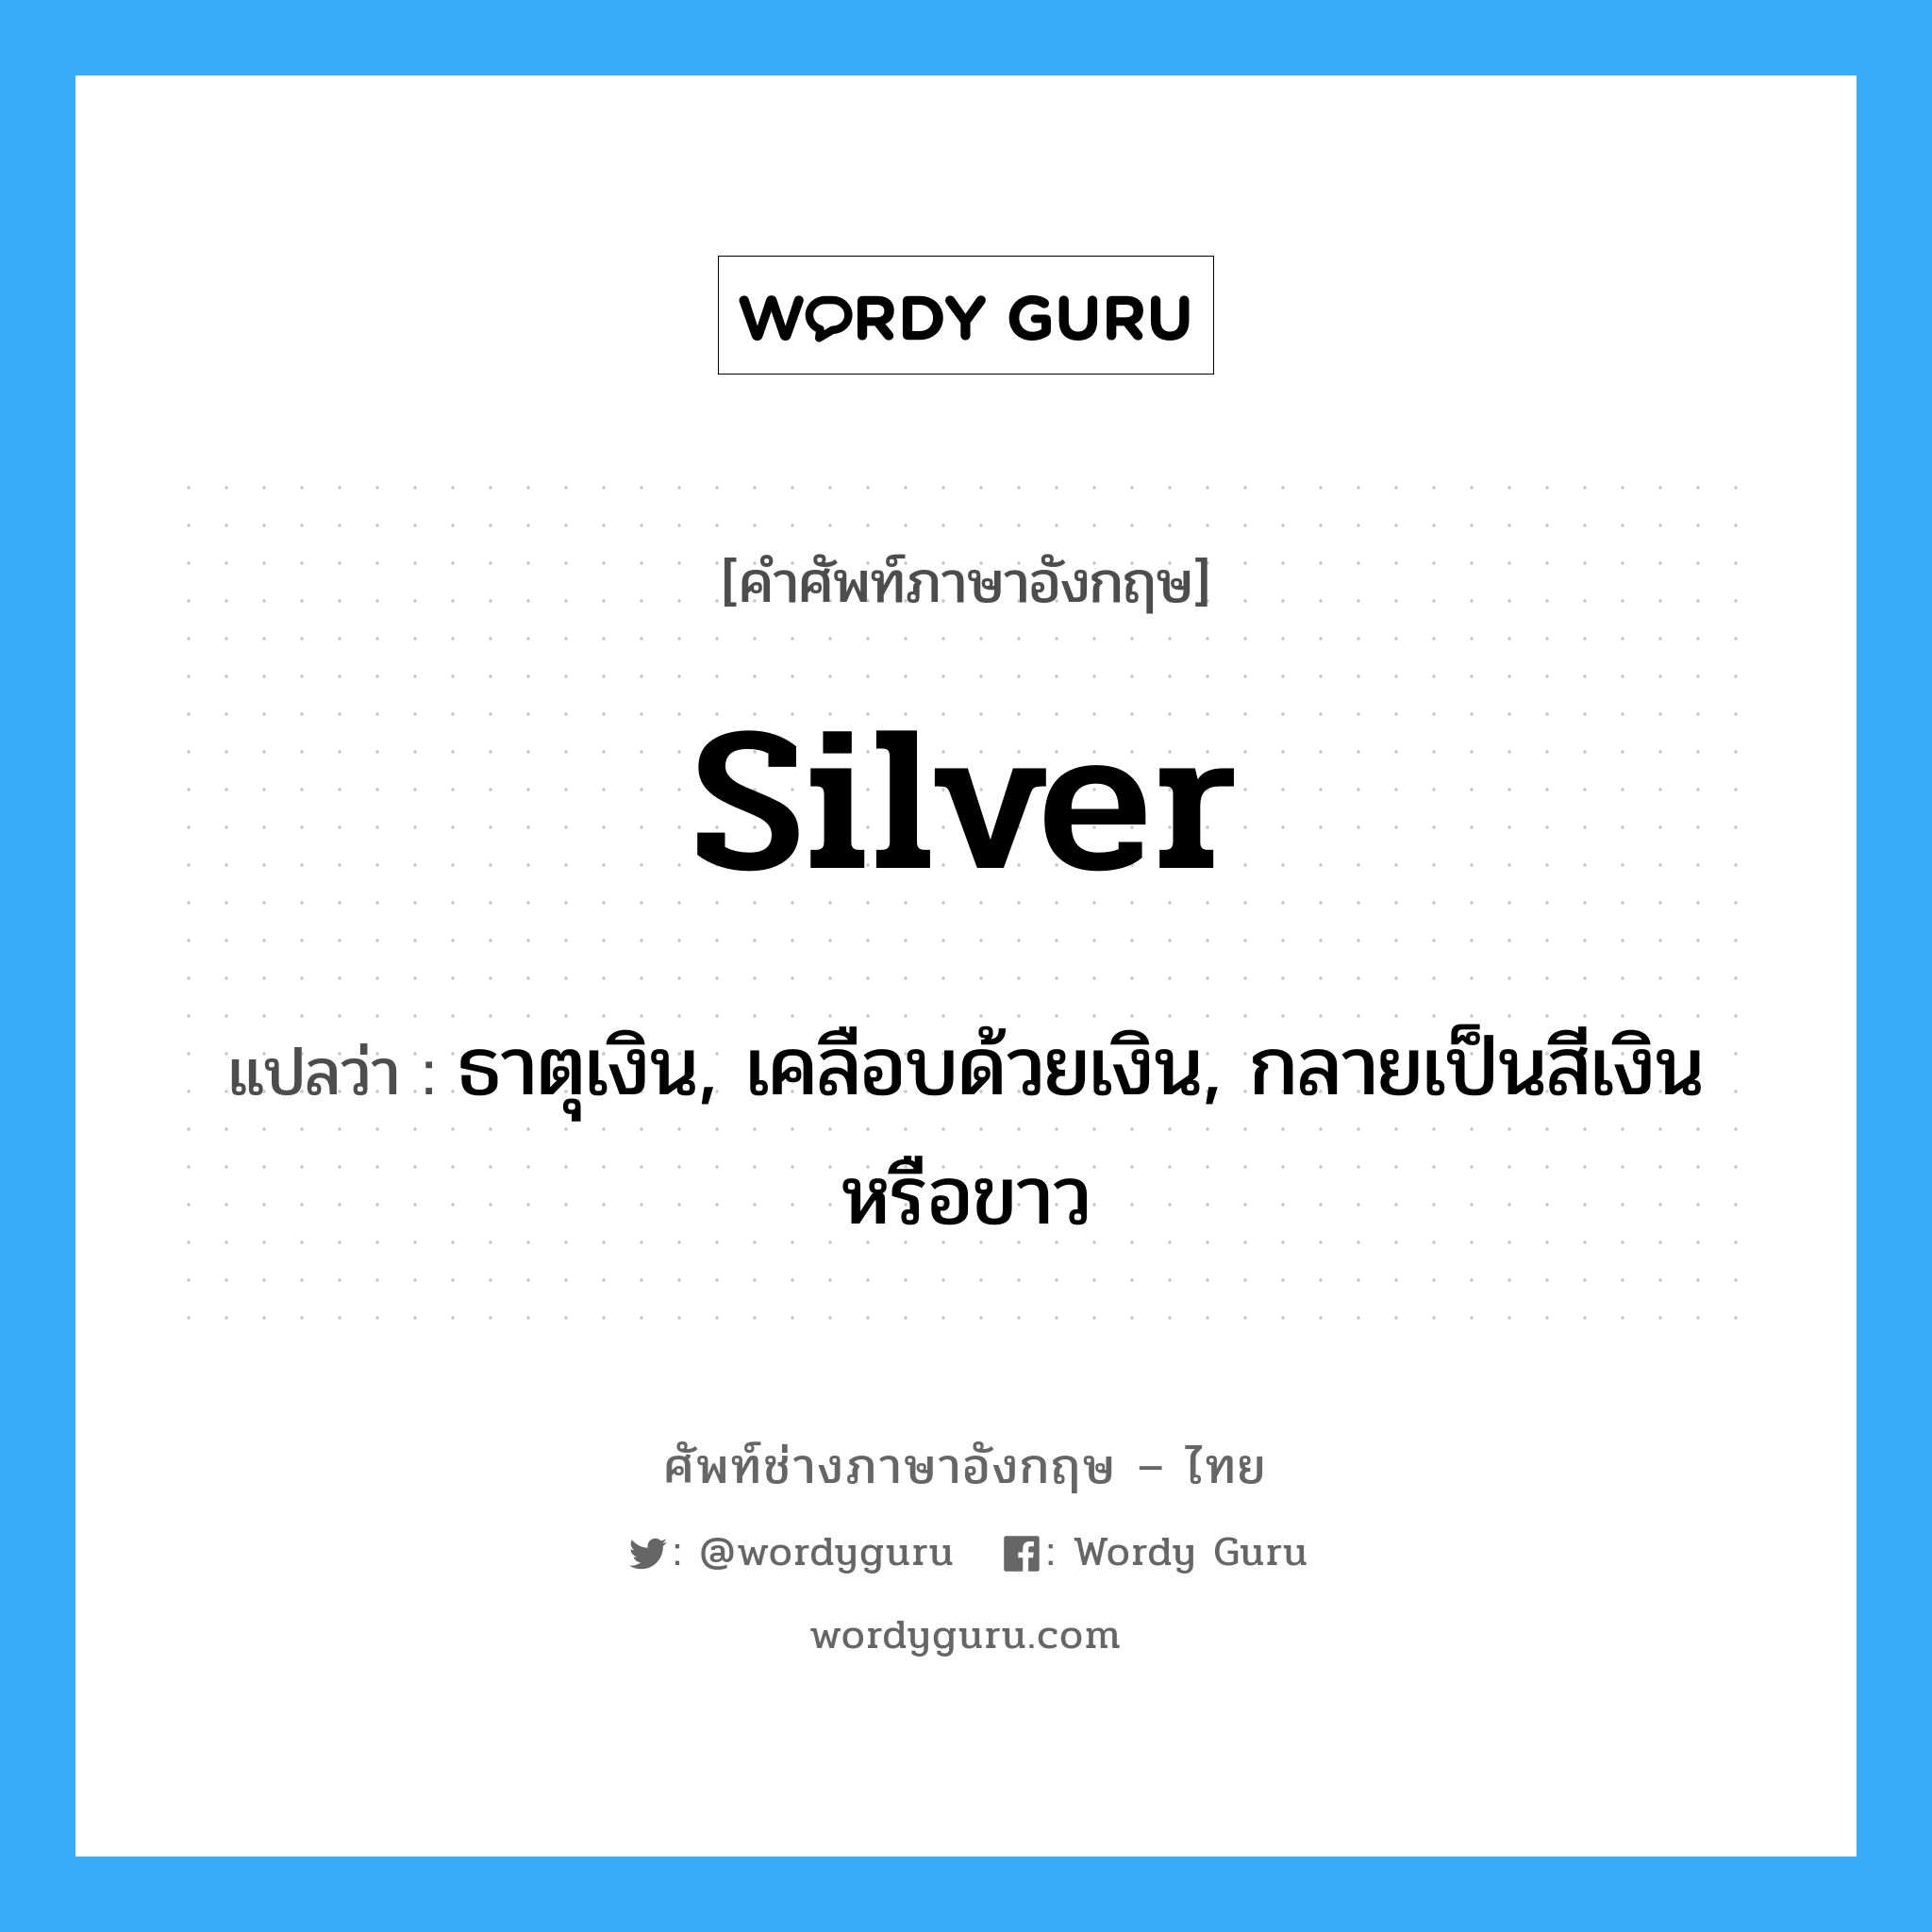 silver แปลว่า?, คำศัพท์ช่างภาษาอังกฤษ - ไทย silver คำศัพท์ภาษาอังกฤษ silver แปลว่า ธาตุเงิน, เคลือบด้วยเงิน, กลายเป็นสีเงินหรือขาว